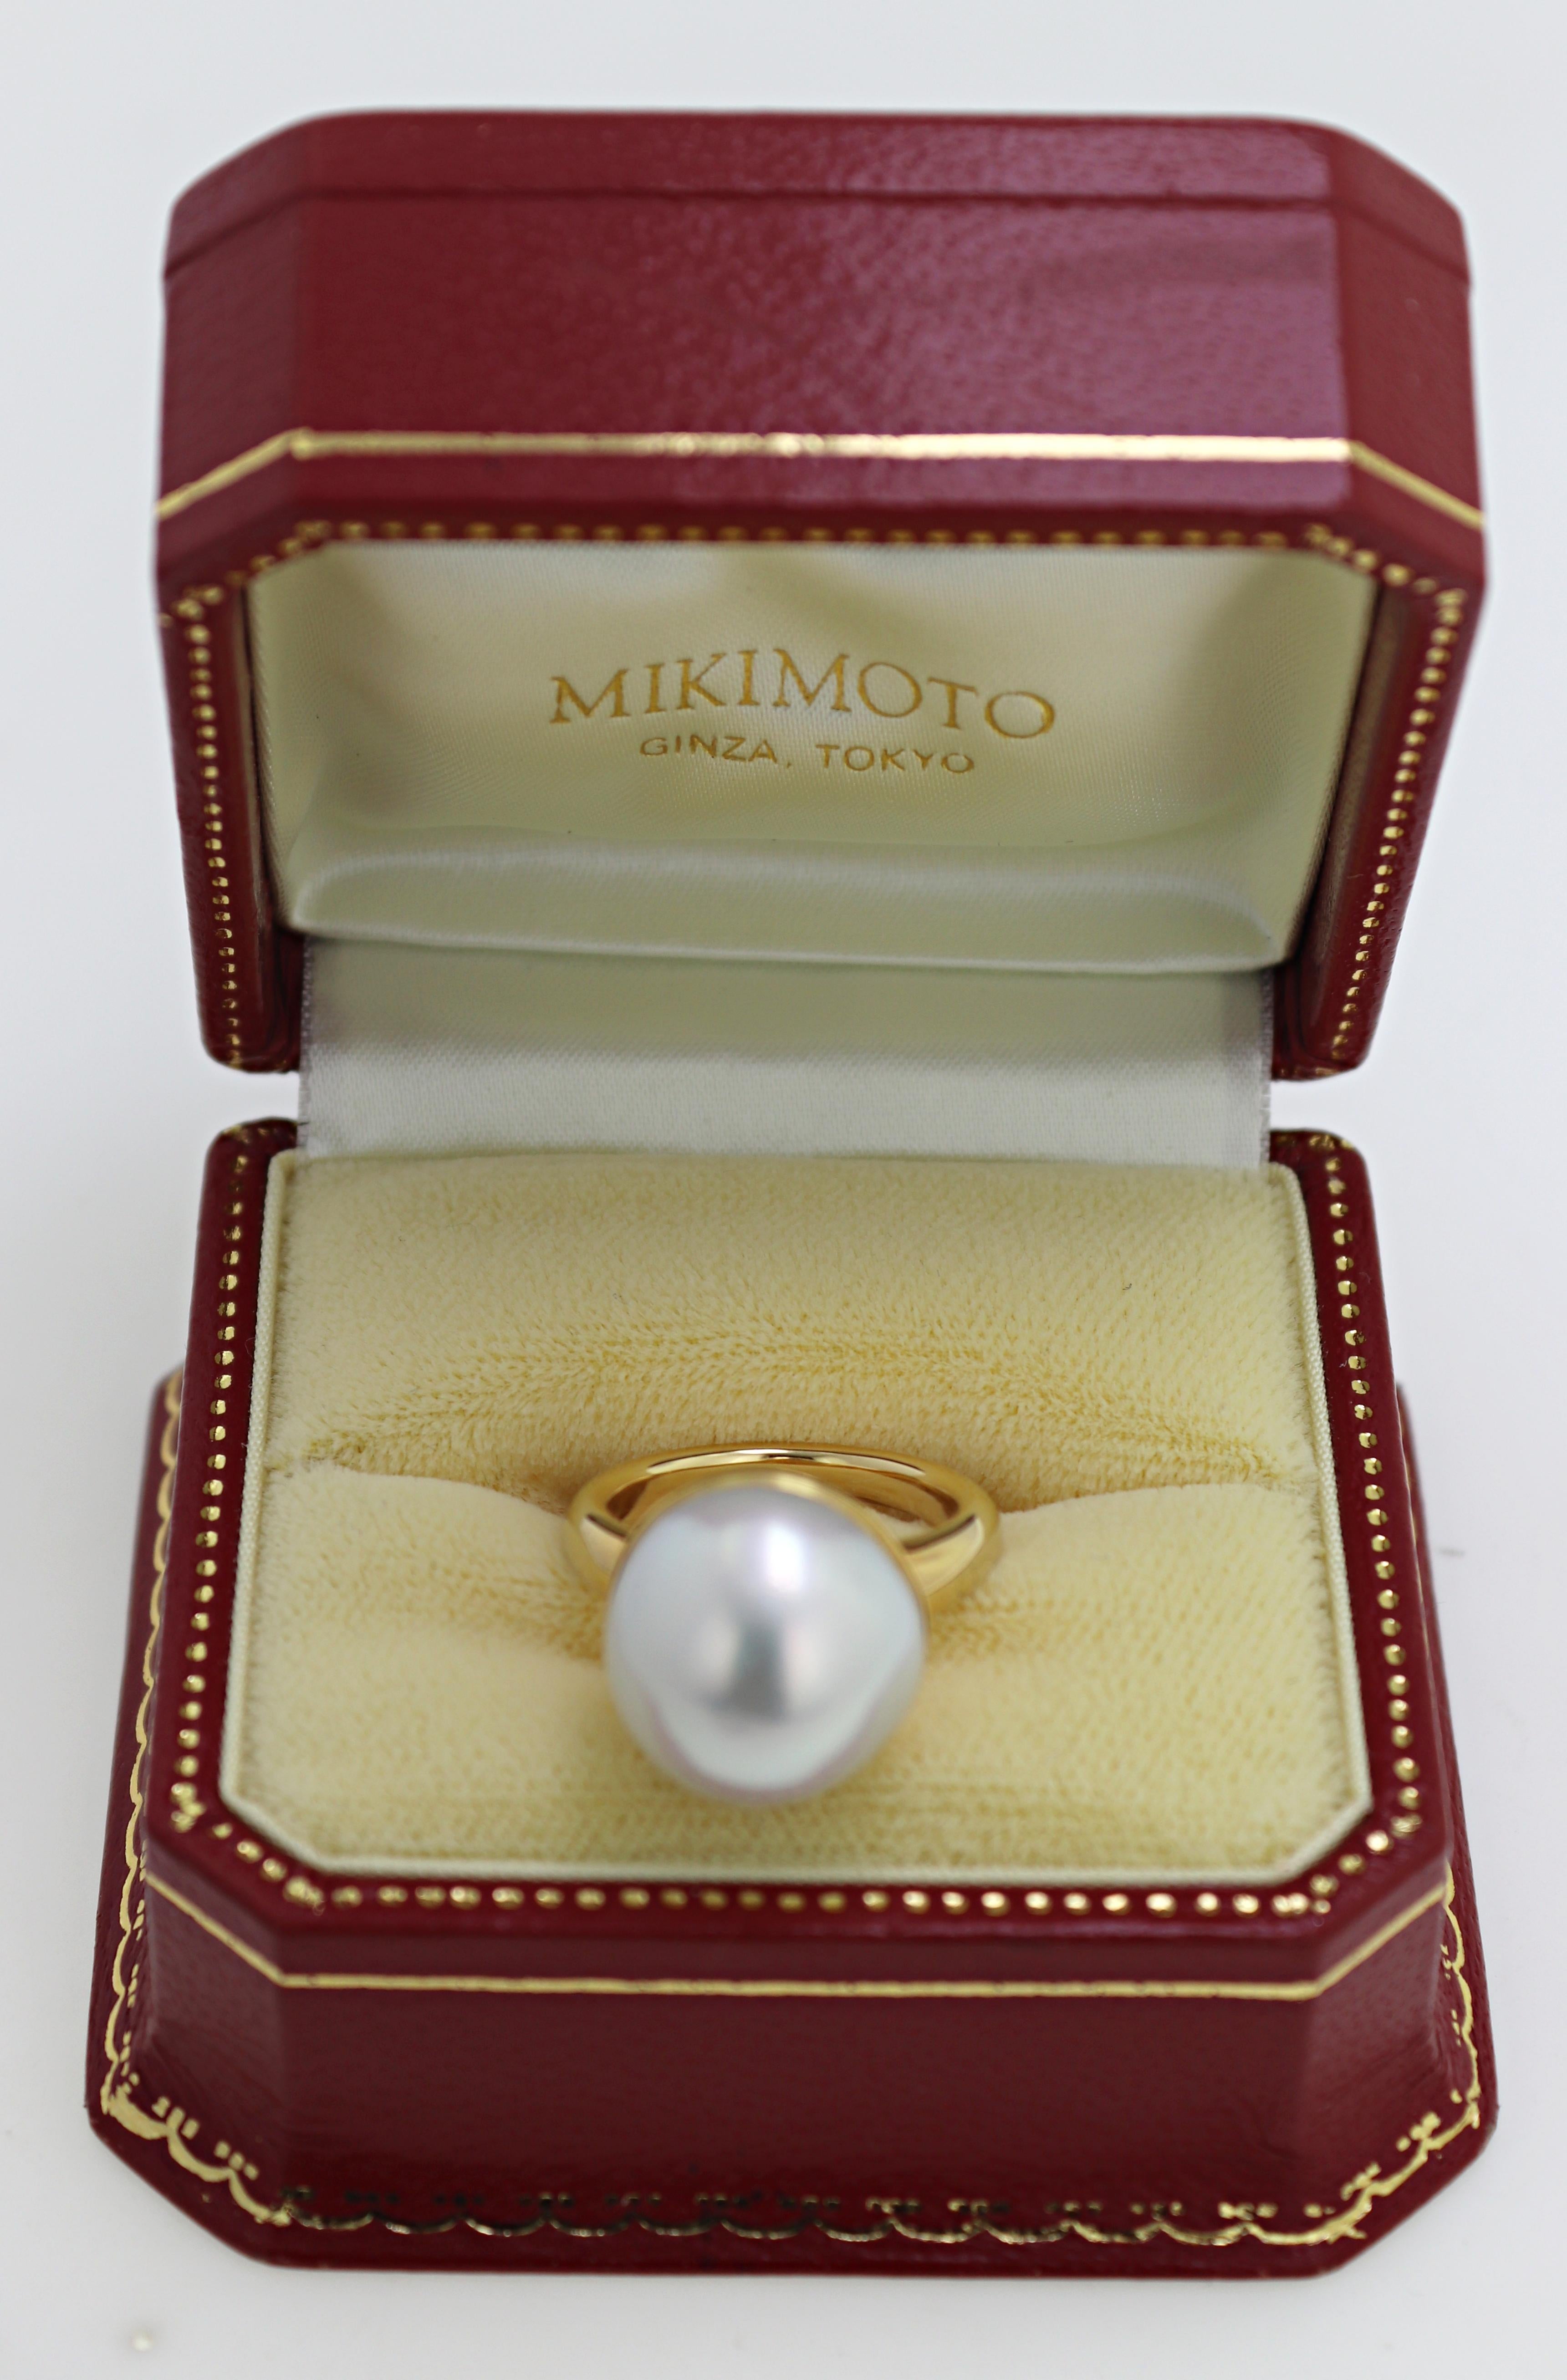 mikimoto box